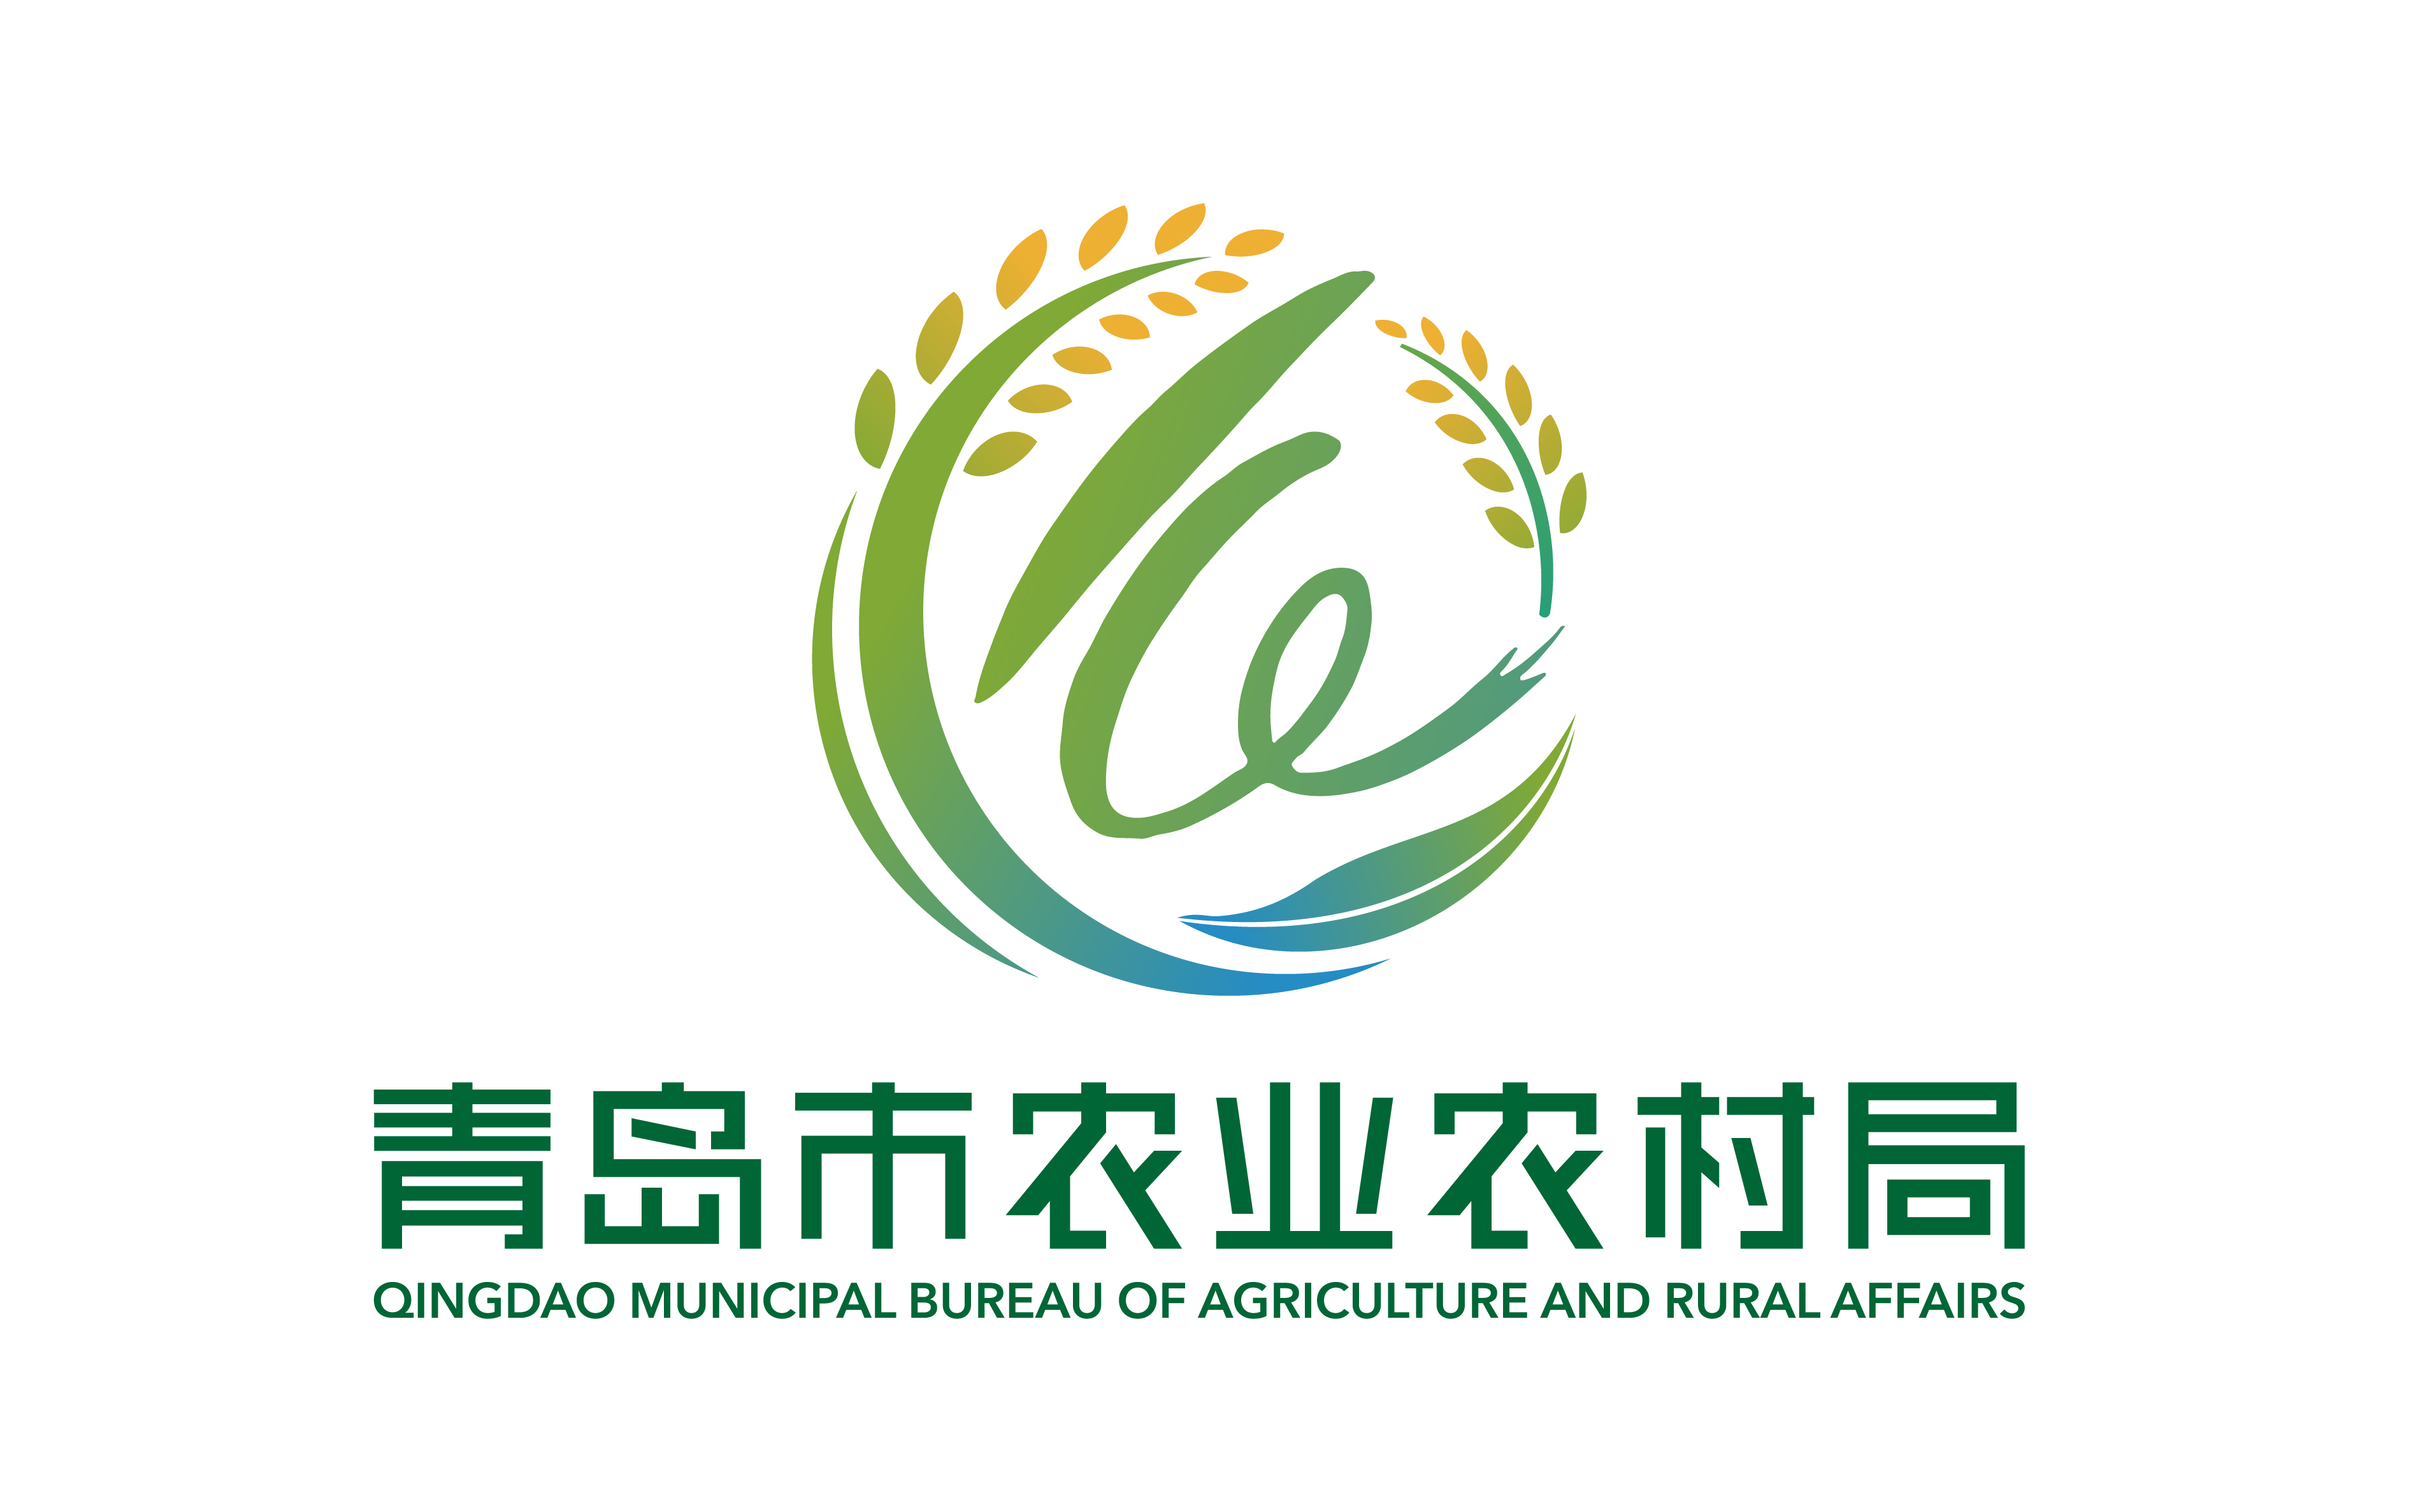 青岛市农业农村局新logo正式启用